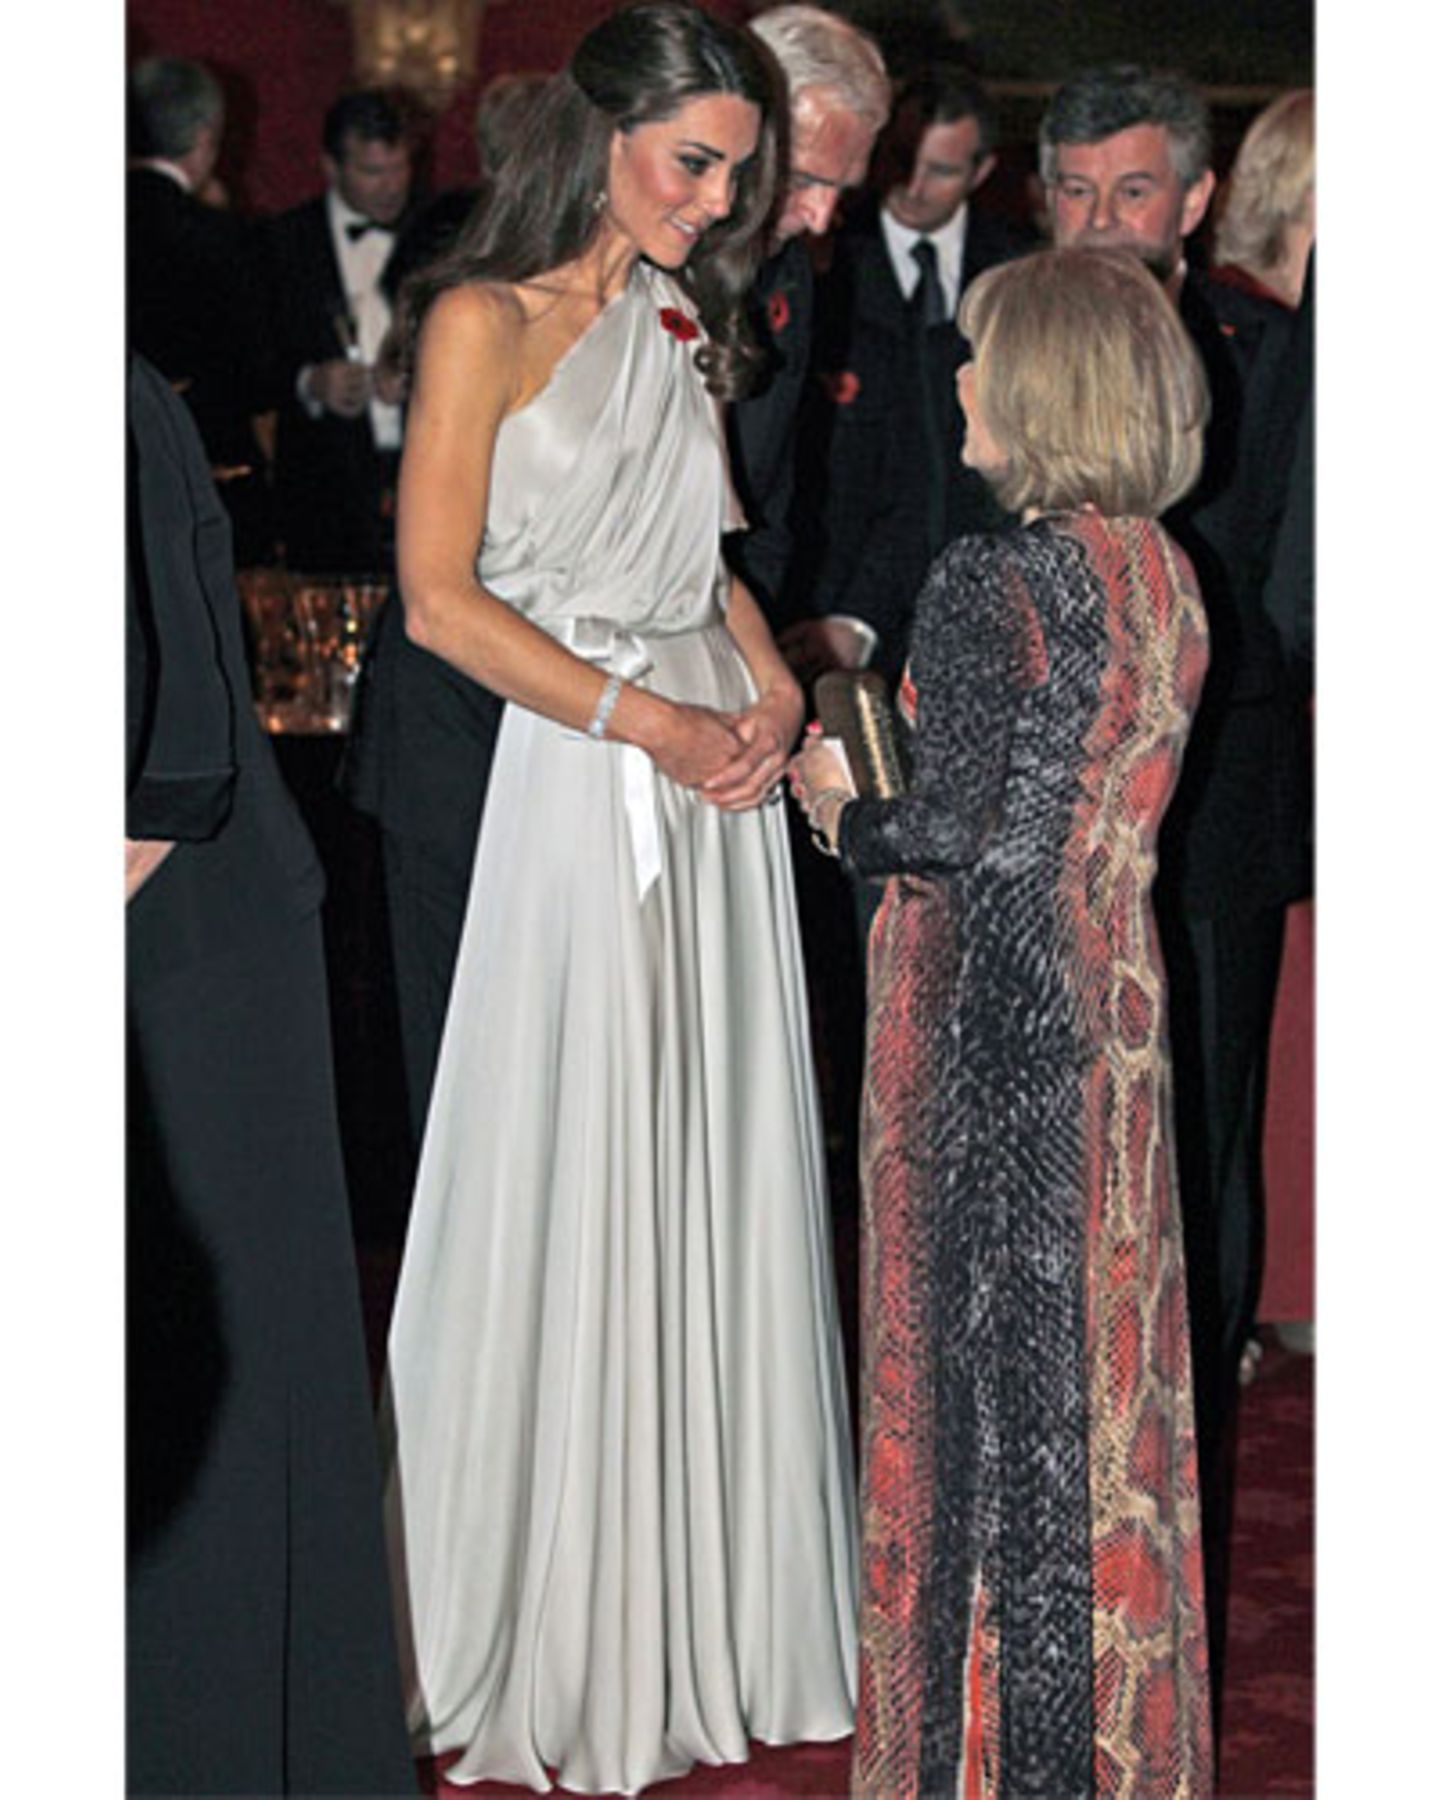 Frage von rechts: "Sagen Sie einmal, Ihre königliche Hoheit, wie hoch sind eigentlich die Absätze, die Sie unter diesem Kleid verstecken." Antwort von links: "Das verrate ich Ihnen nur, wenn Sie mir versichern, dass für Ihr Outfit keine Schlangen sterben mussten."